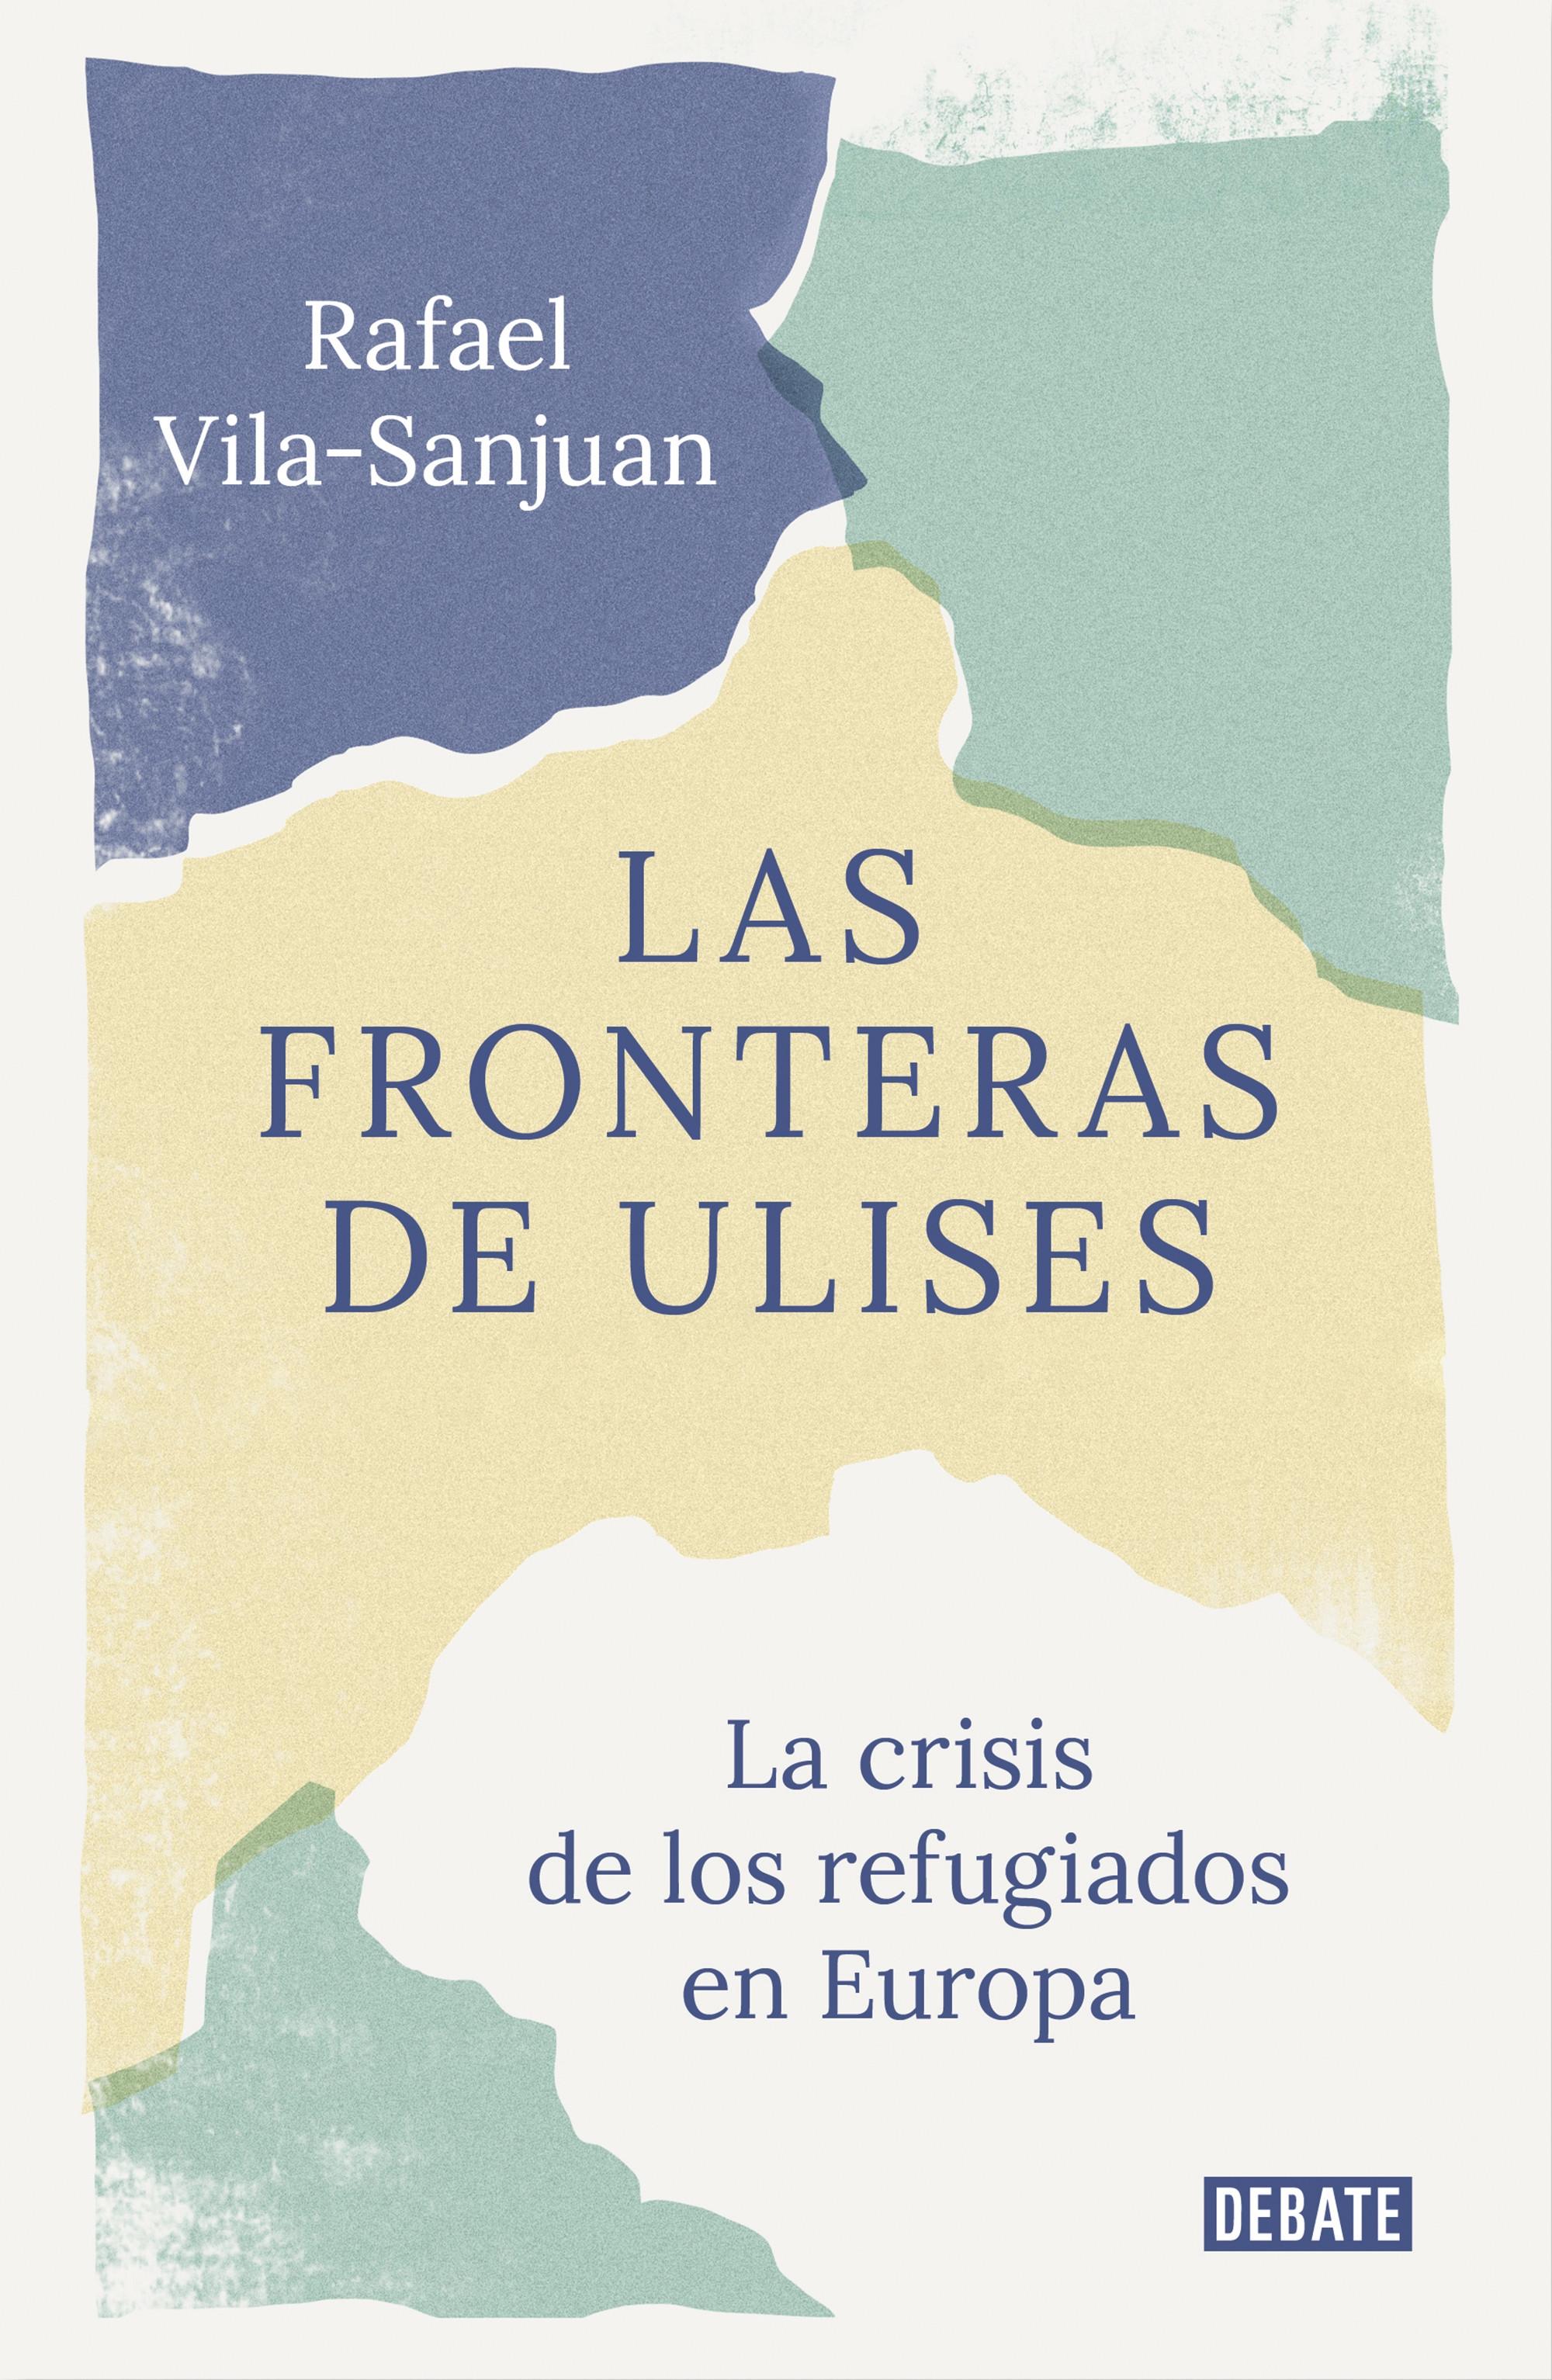 Las fronteras de Ulises "El viaje de los refugiados a Europa"